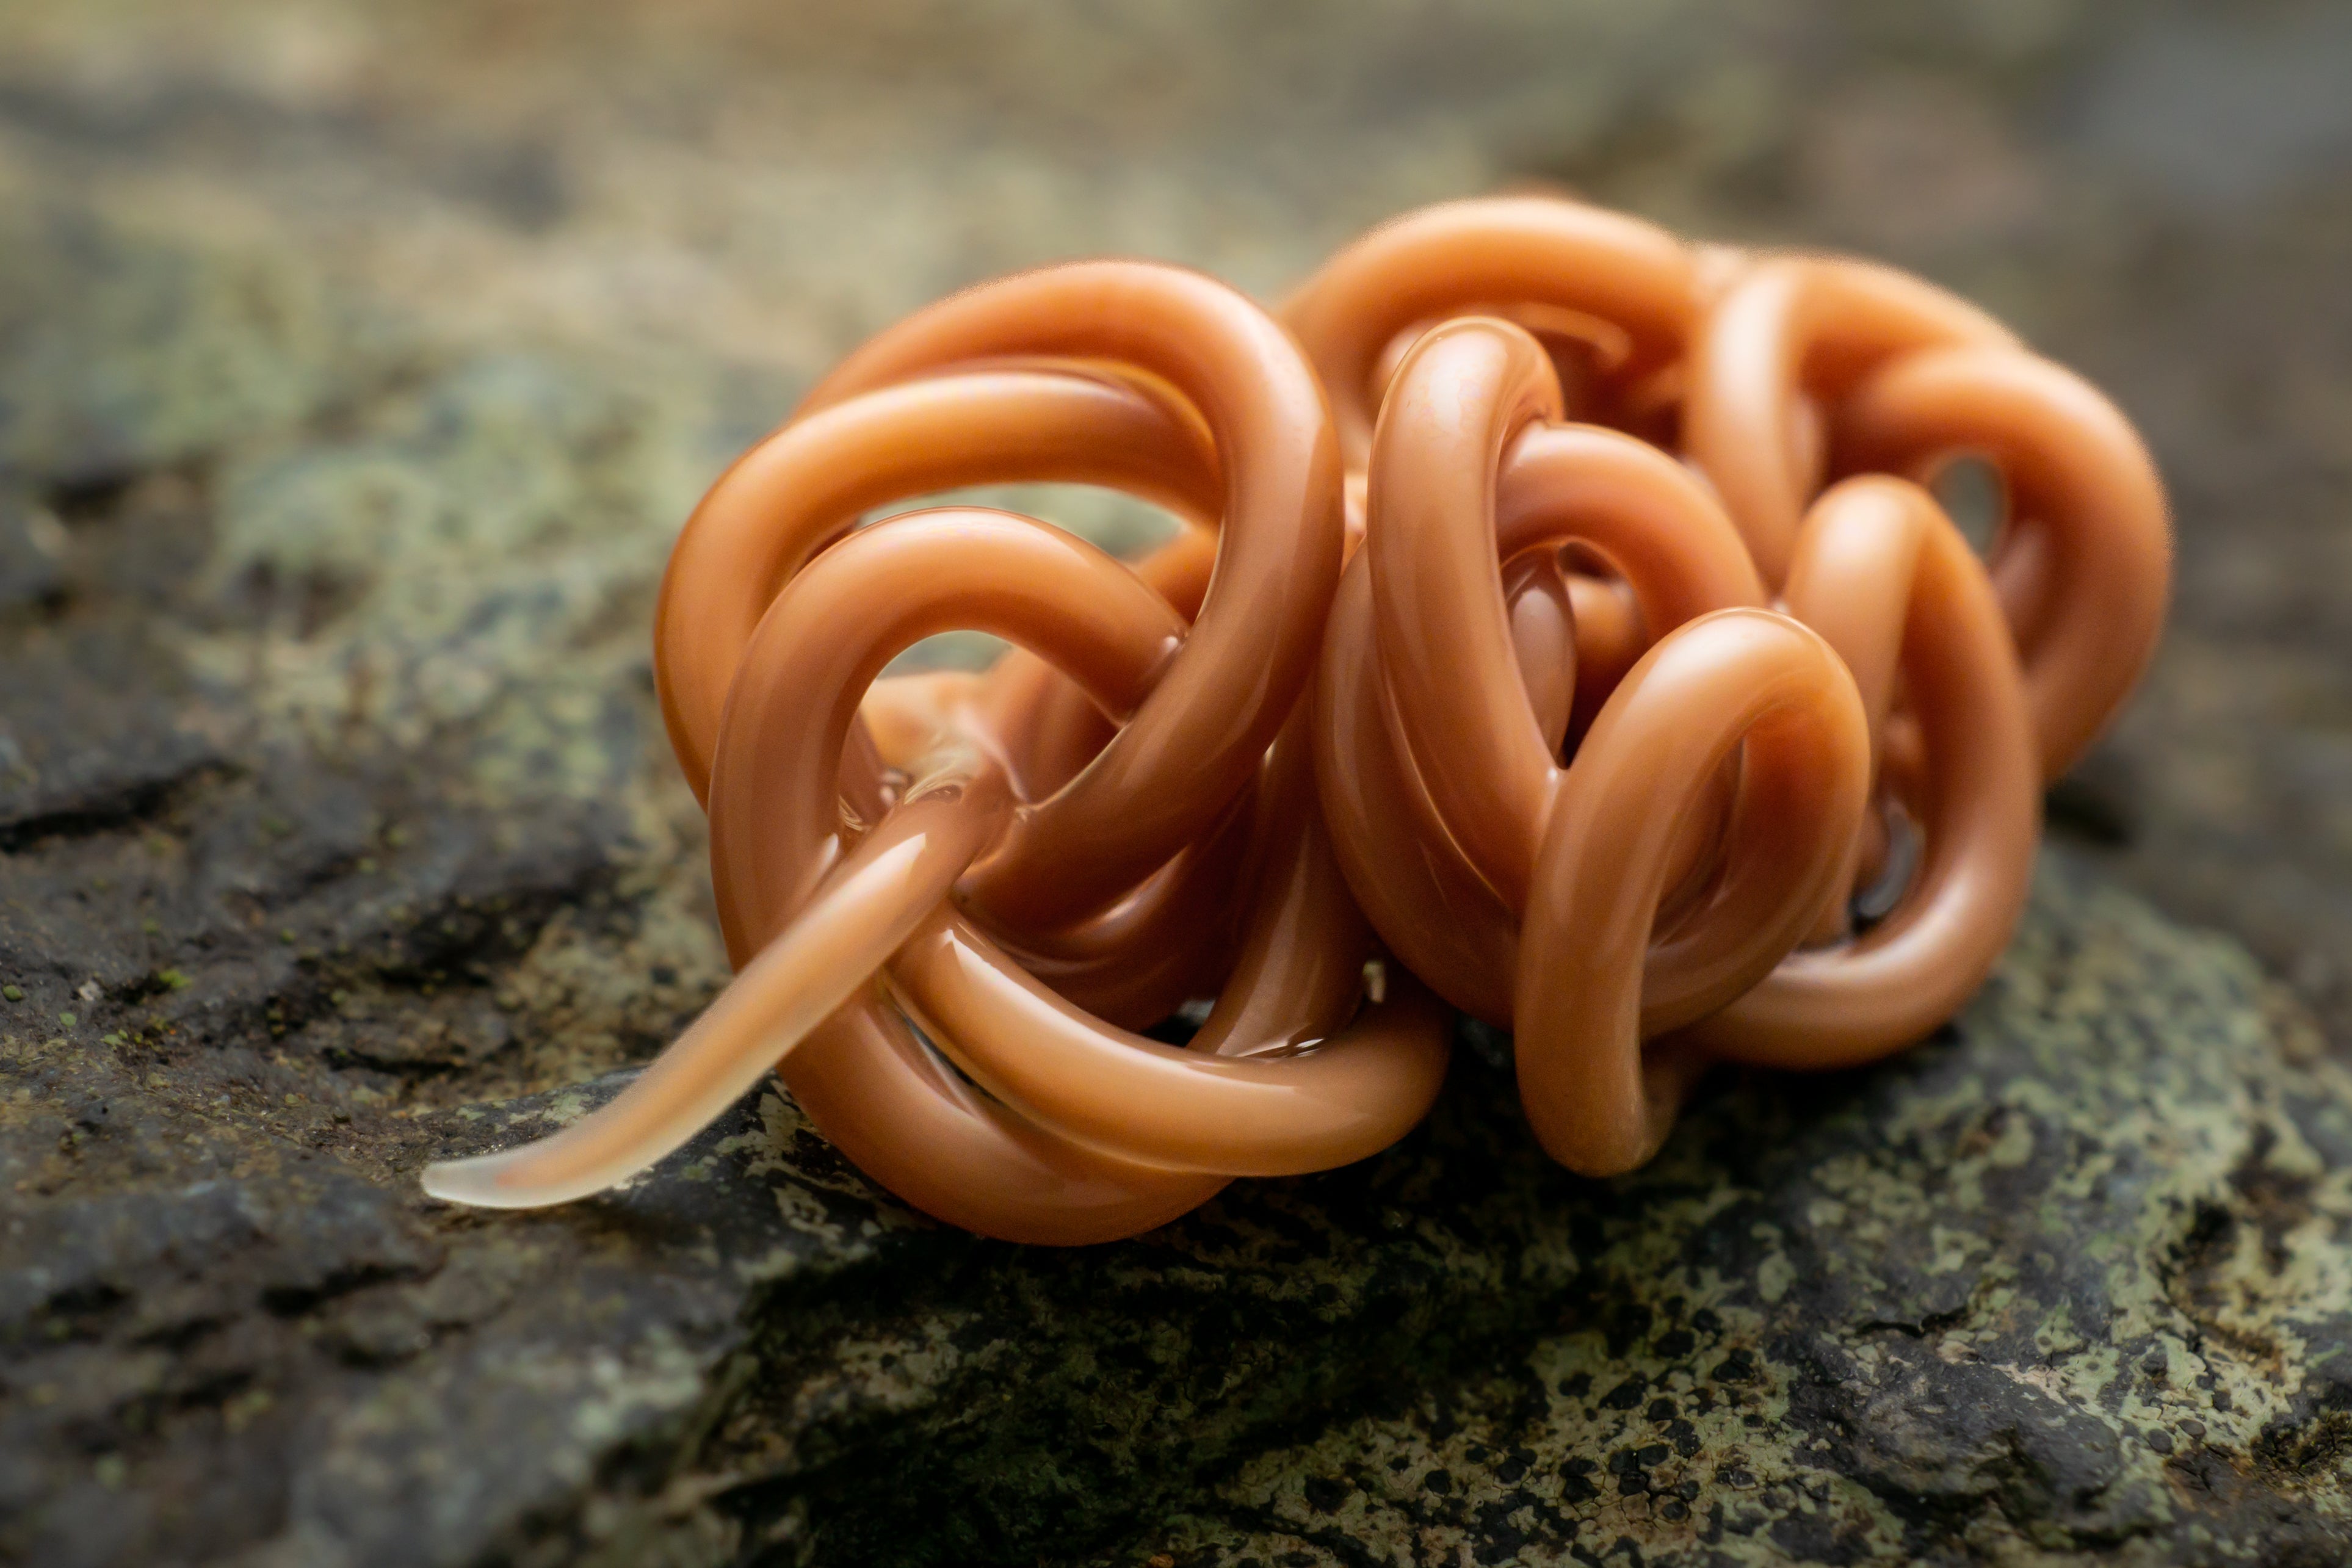 An Australian parasitic worm in a knot. (Photo: Ben Revell)